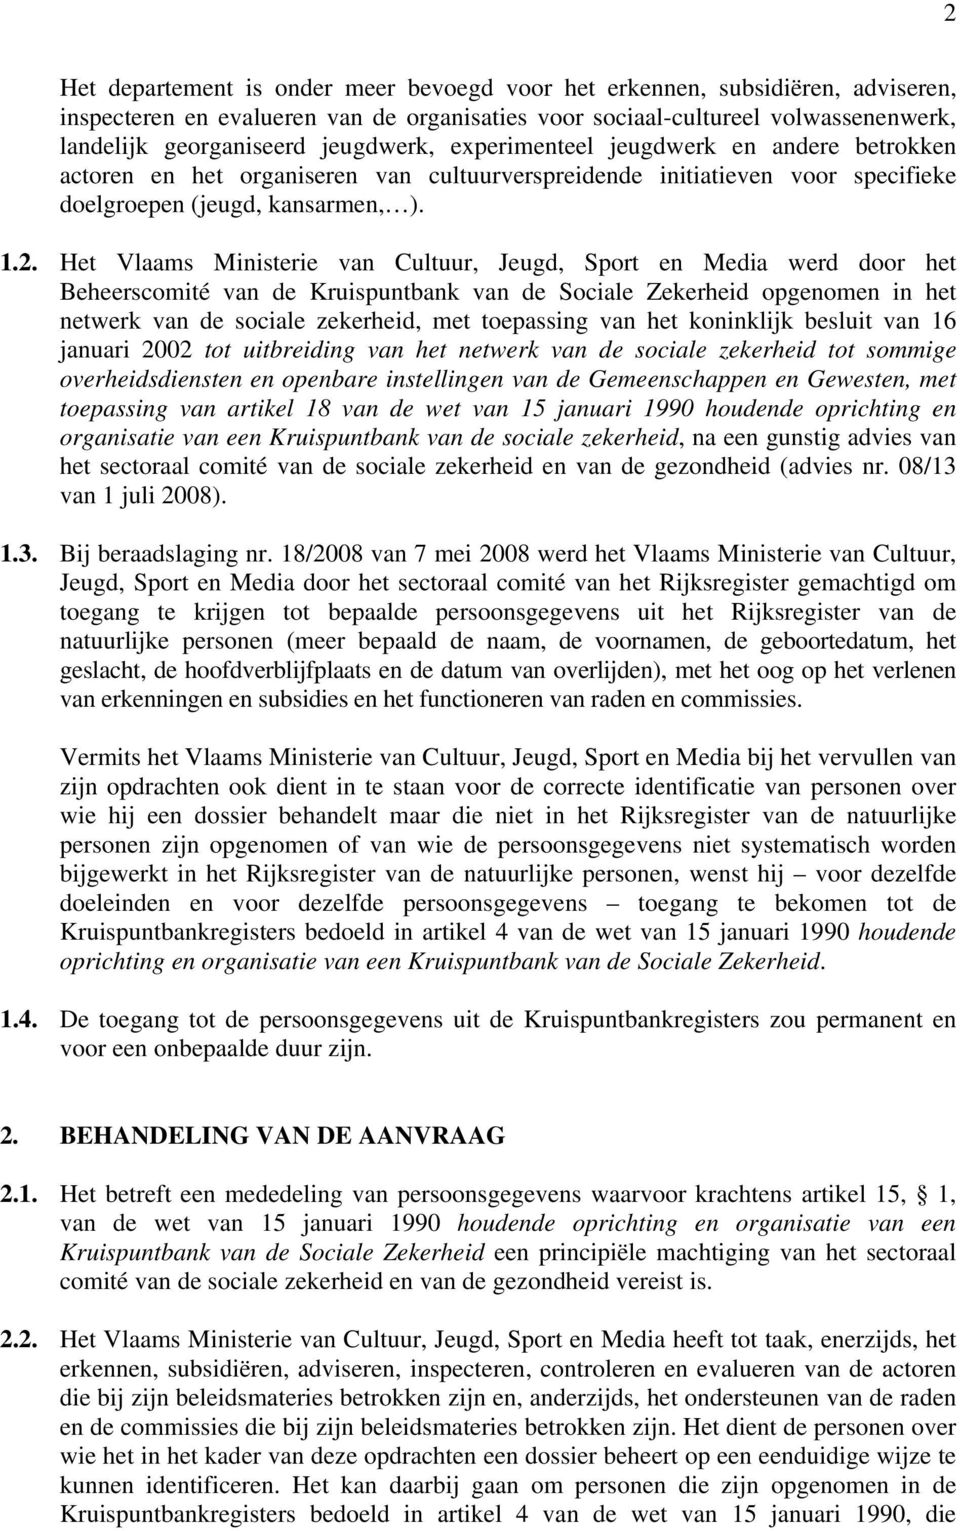 Het Vlaams Ministerie van Cultuur, Jeugd, Sport en Media werd door het Beheerscomité van de Kruispuntbank van de Sociale Zekerheid opgenomen in het netwerk van de sociale zekerheid, met toepassing